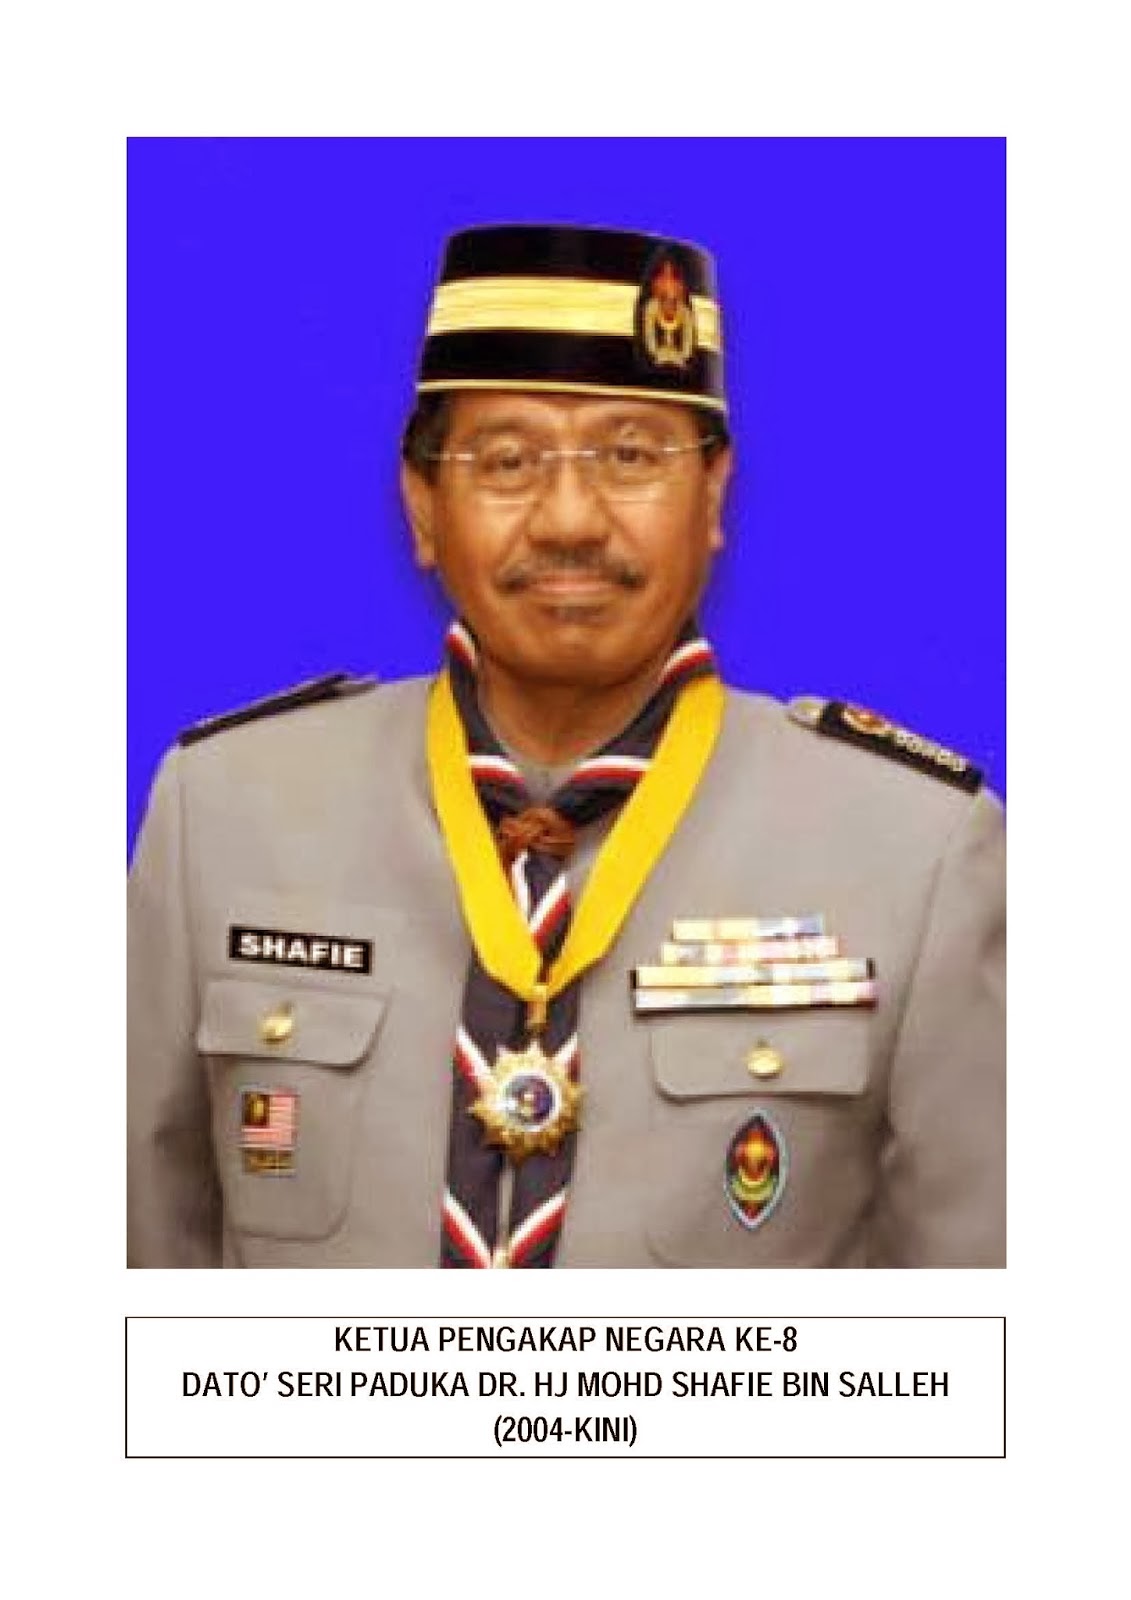 Persekutuan Pengakap Malaysia Hulu Terengganu @ QUBERSCOUT ... - 